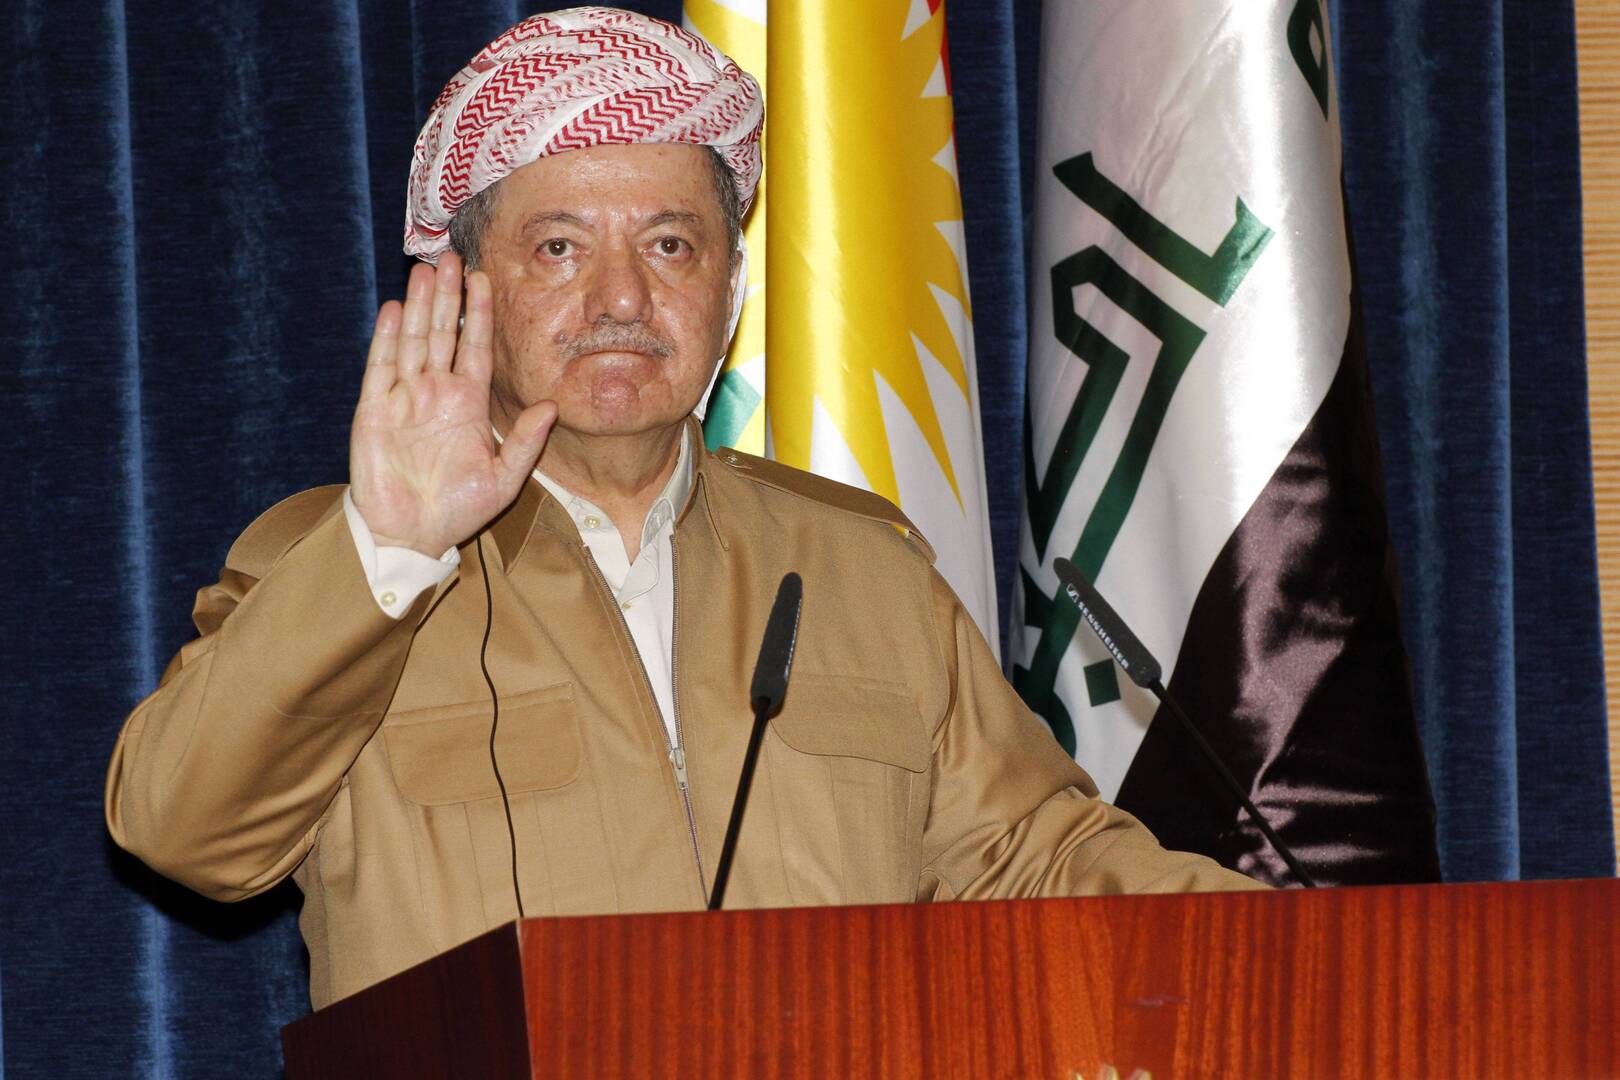 زعيم الحزب الديمقراطي الكردستاني في العراق، مسعود بارزاني